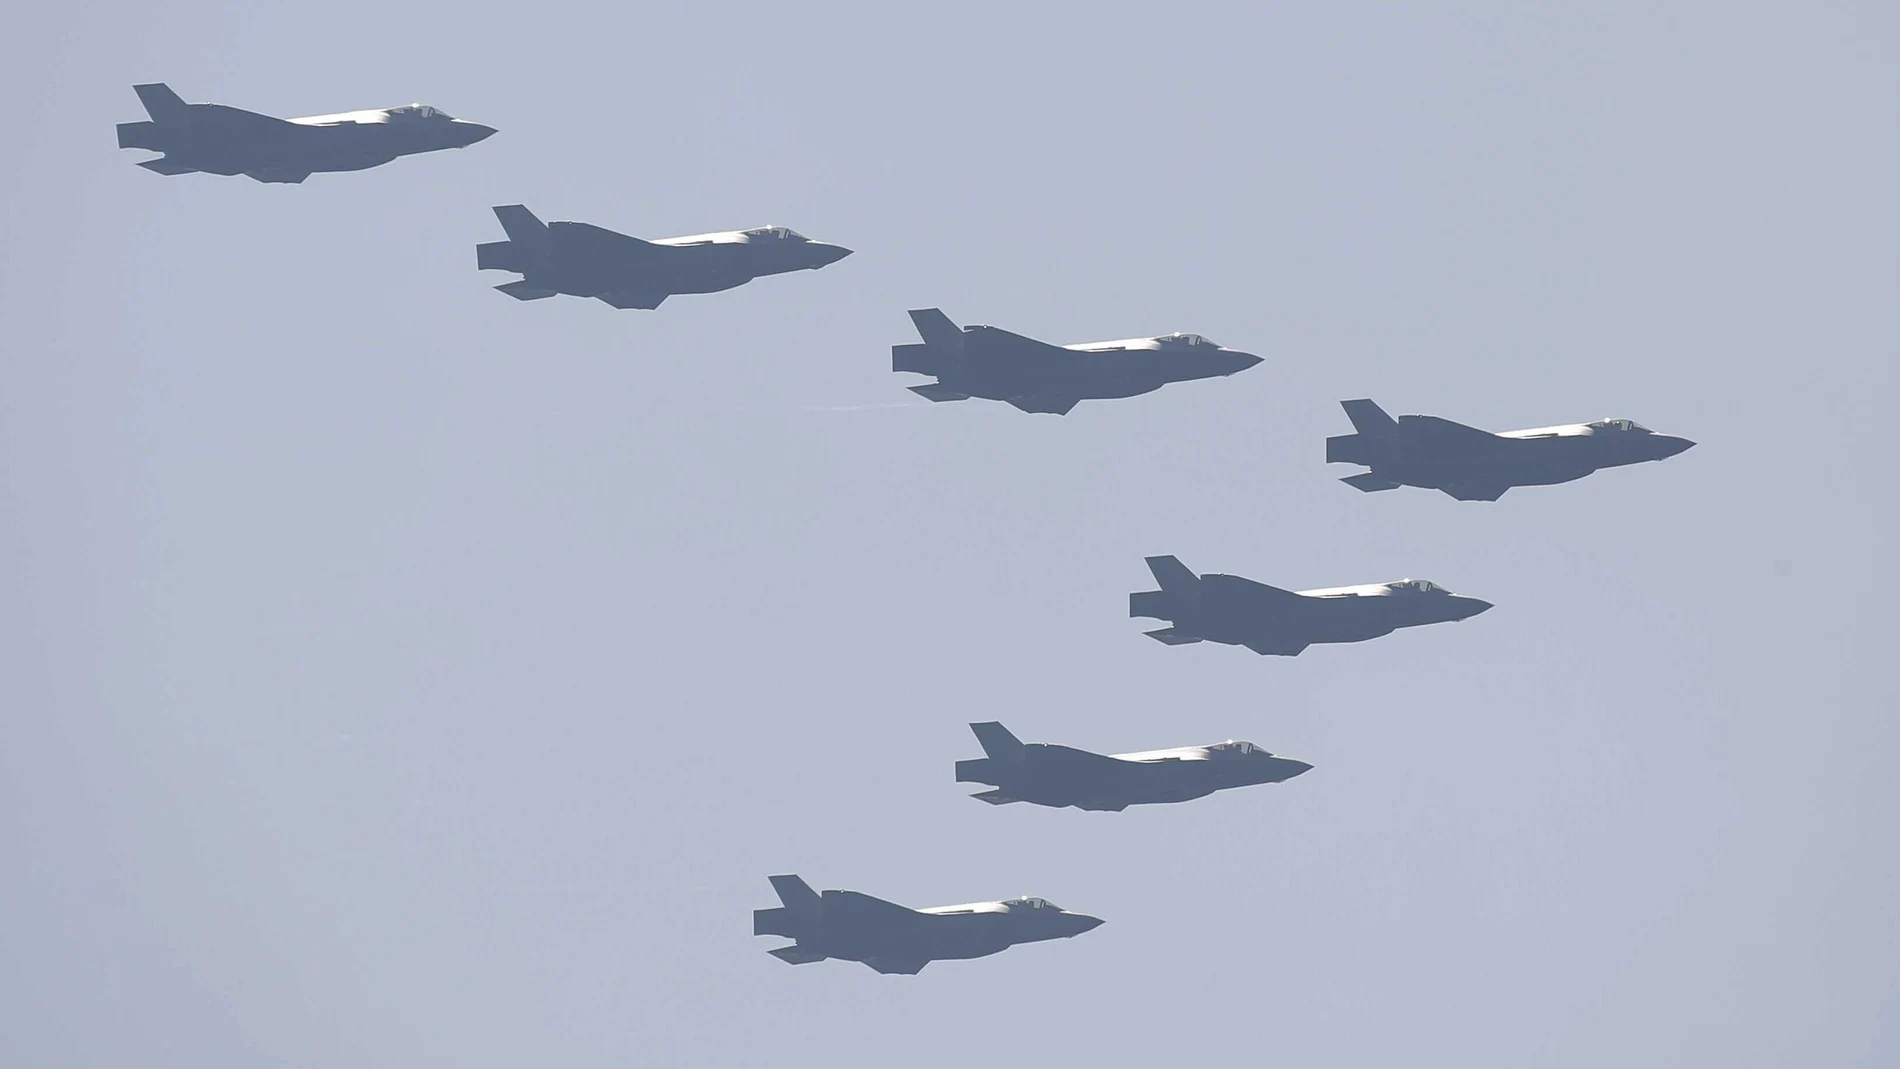 Aviones de combate F-35 de Corea del Sur desplegados tras detectar aeronaves de Corea del Norte